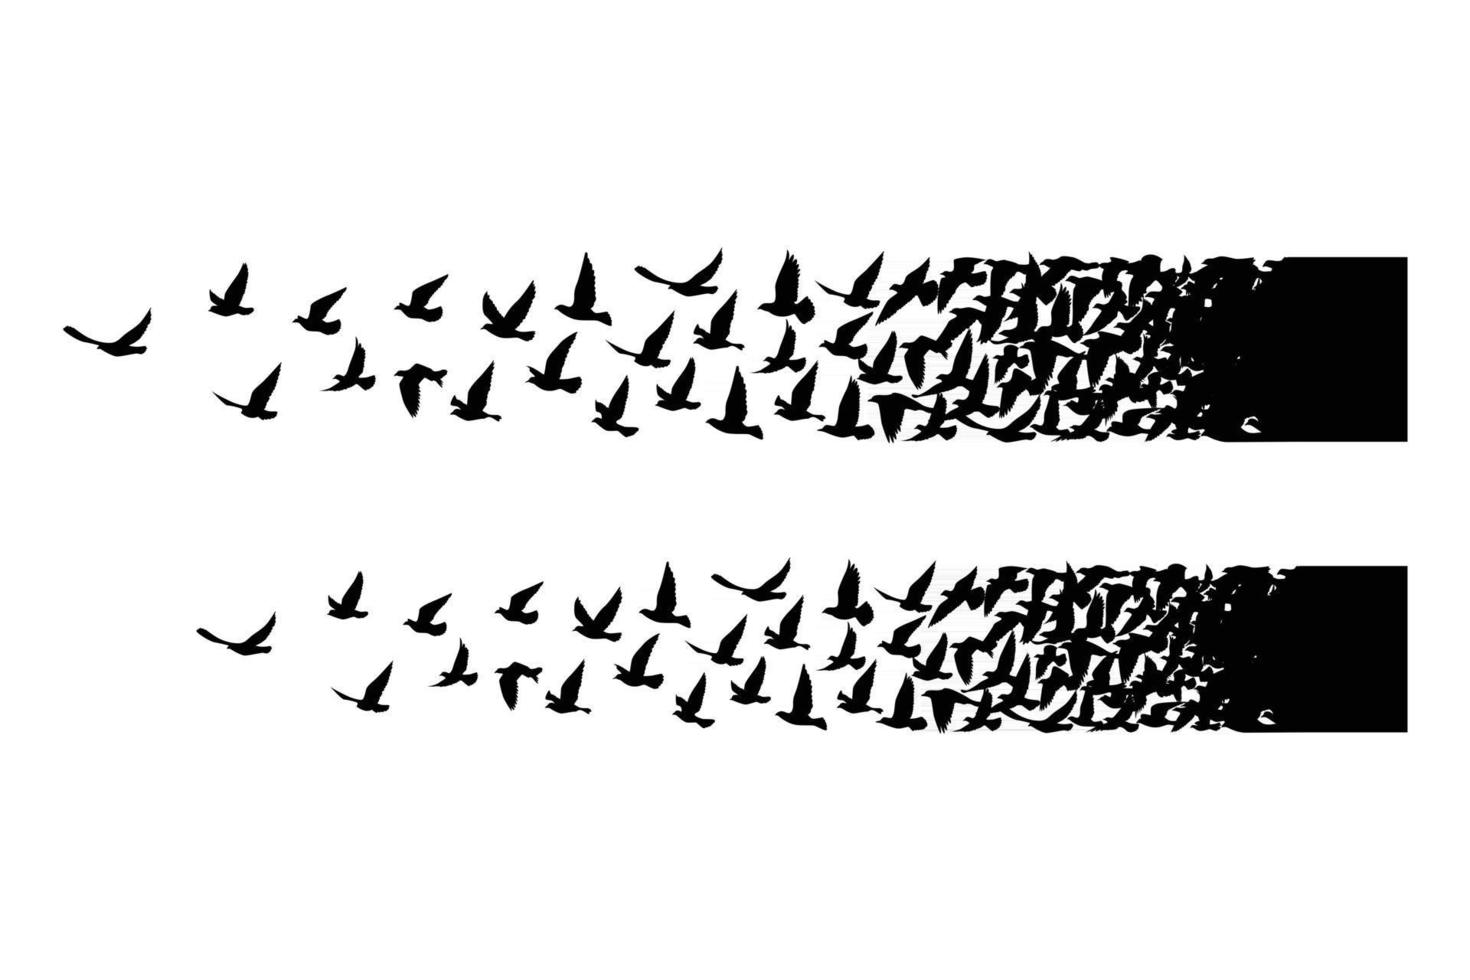 siluetas de aves voladoras sobre fondo blanco ilustración vectorial diseño de tatuaje de pájaro aislado volando vector